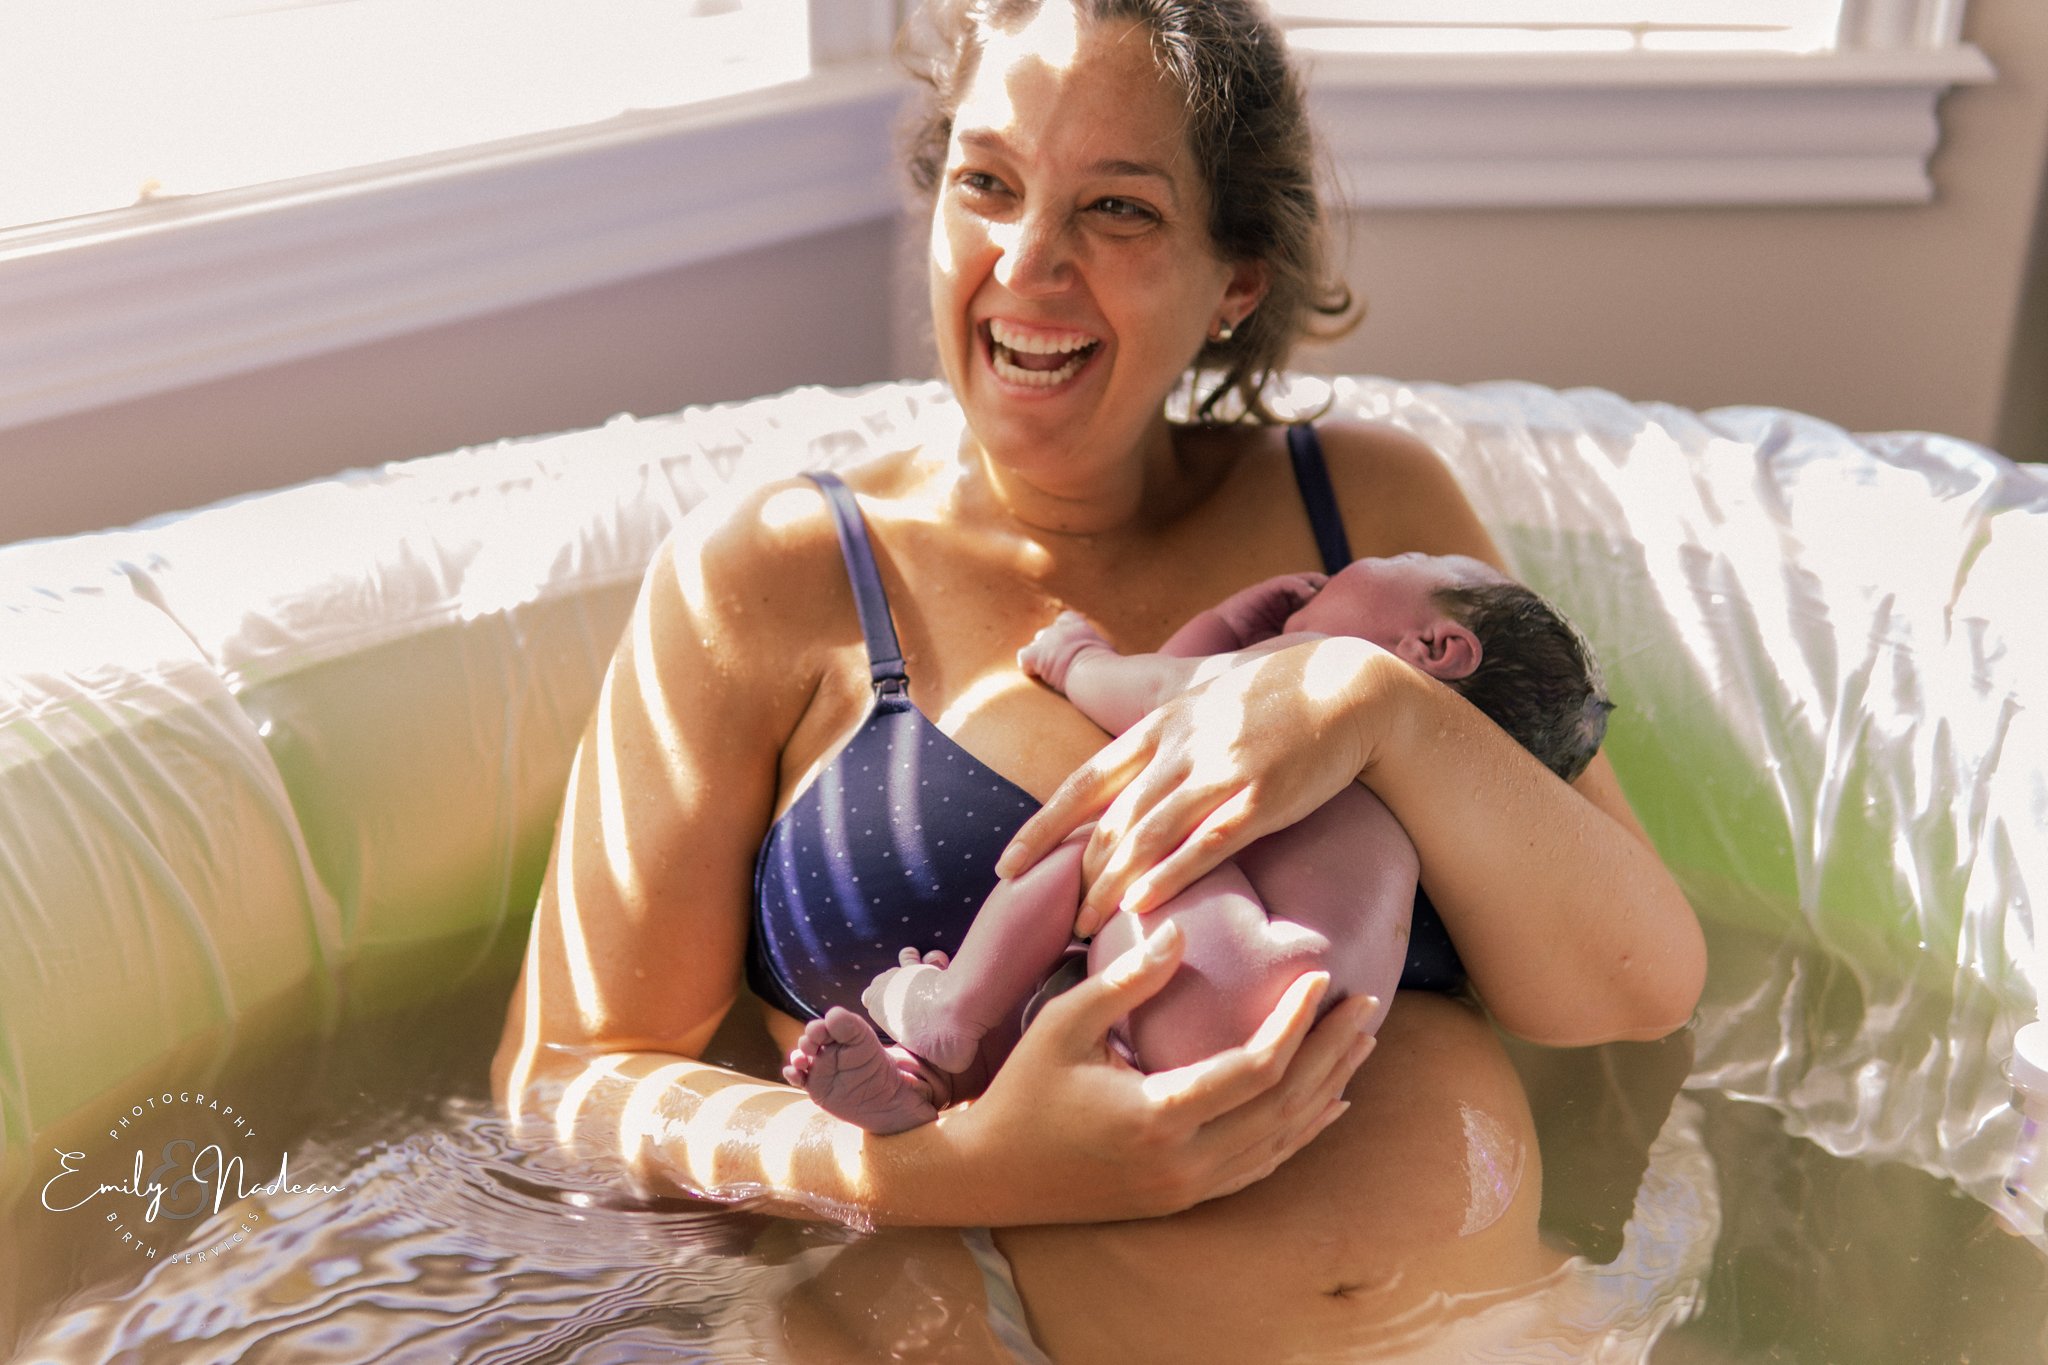 Birth Pool Rental — The Perinatal Wellness Centre